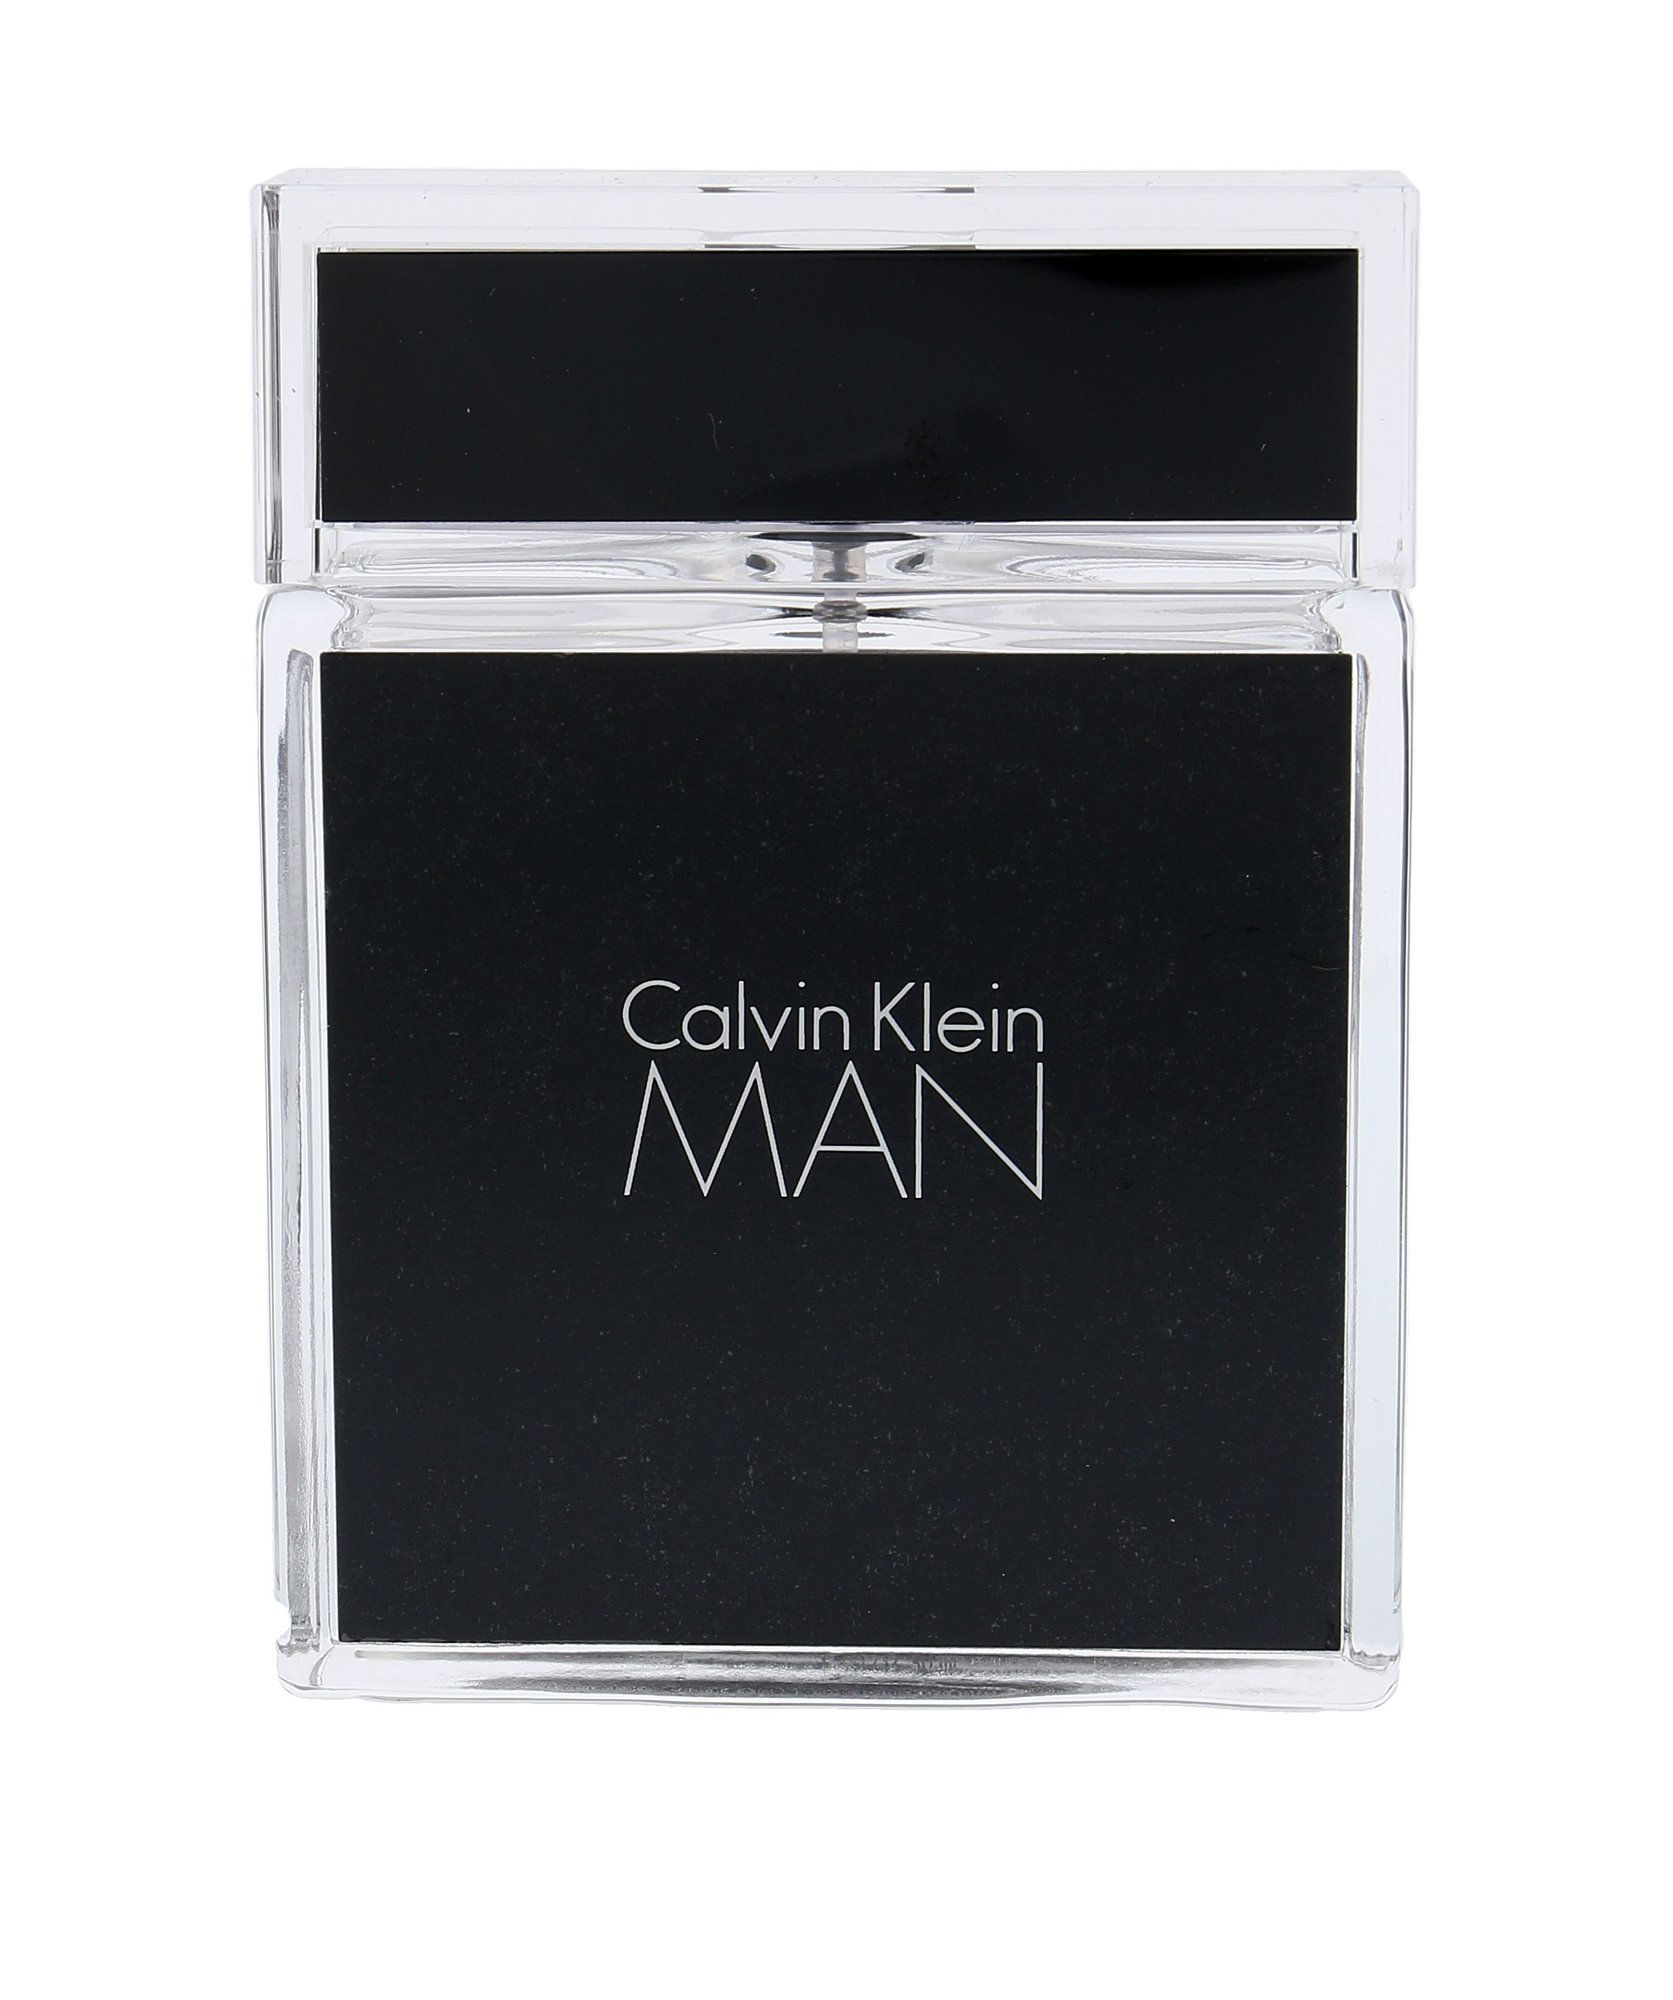 Calvin Klein Man Toaletná voda 50ml